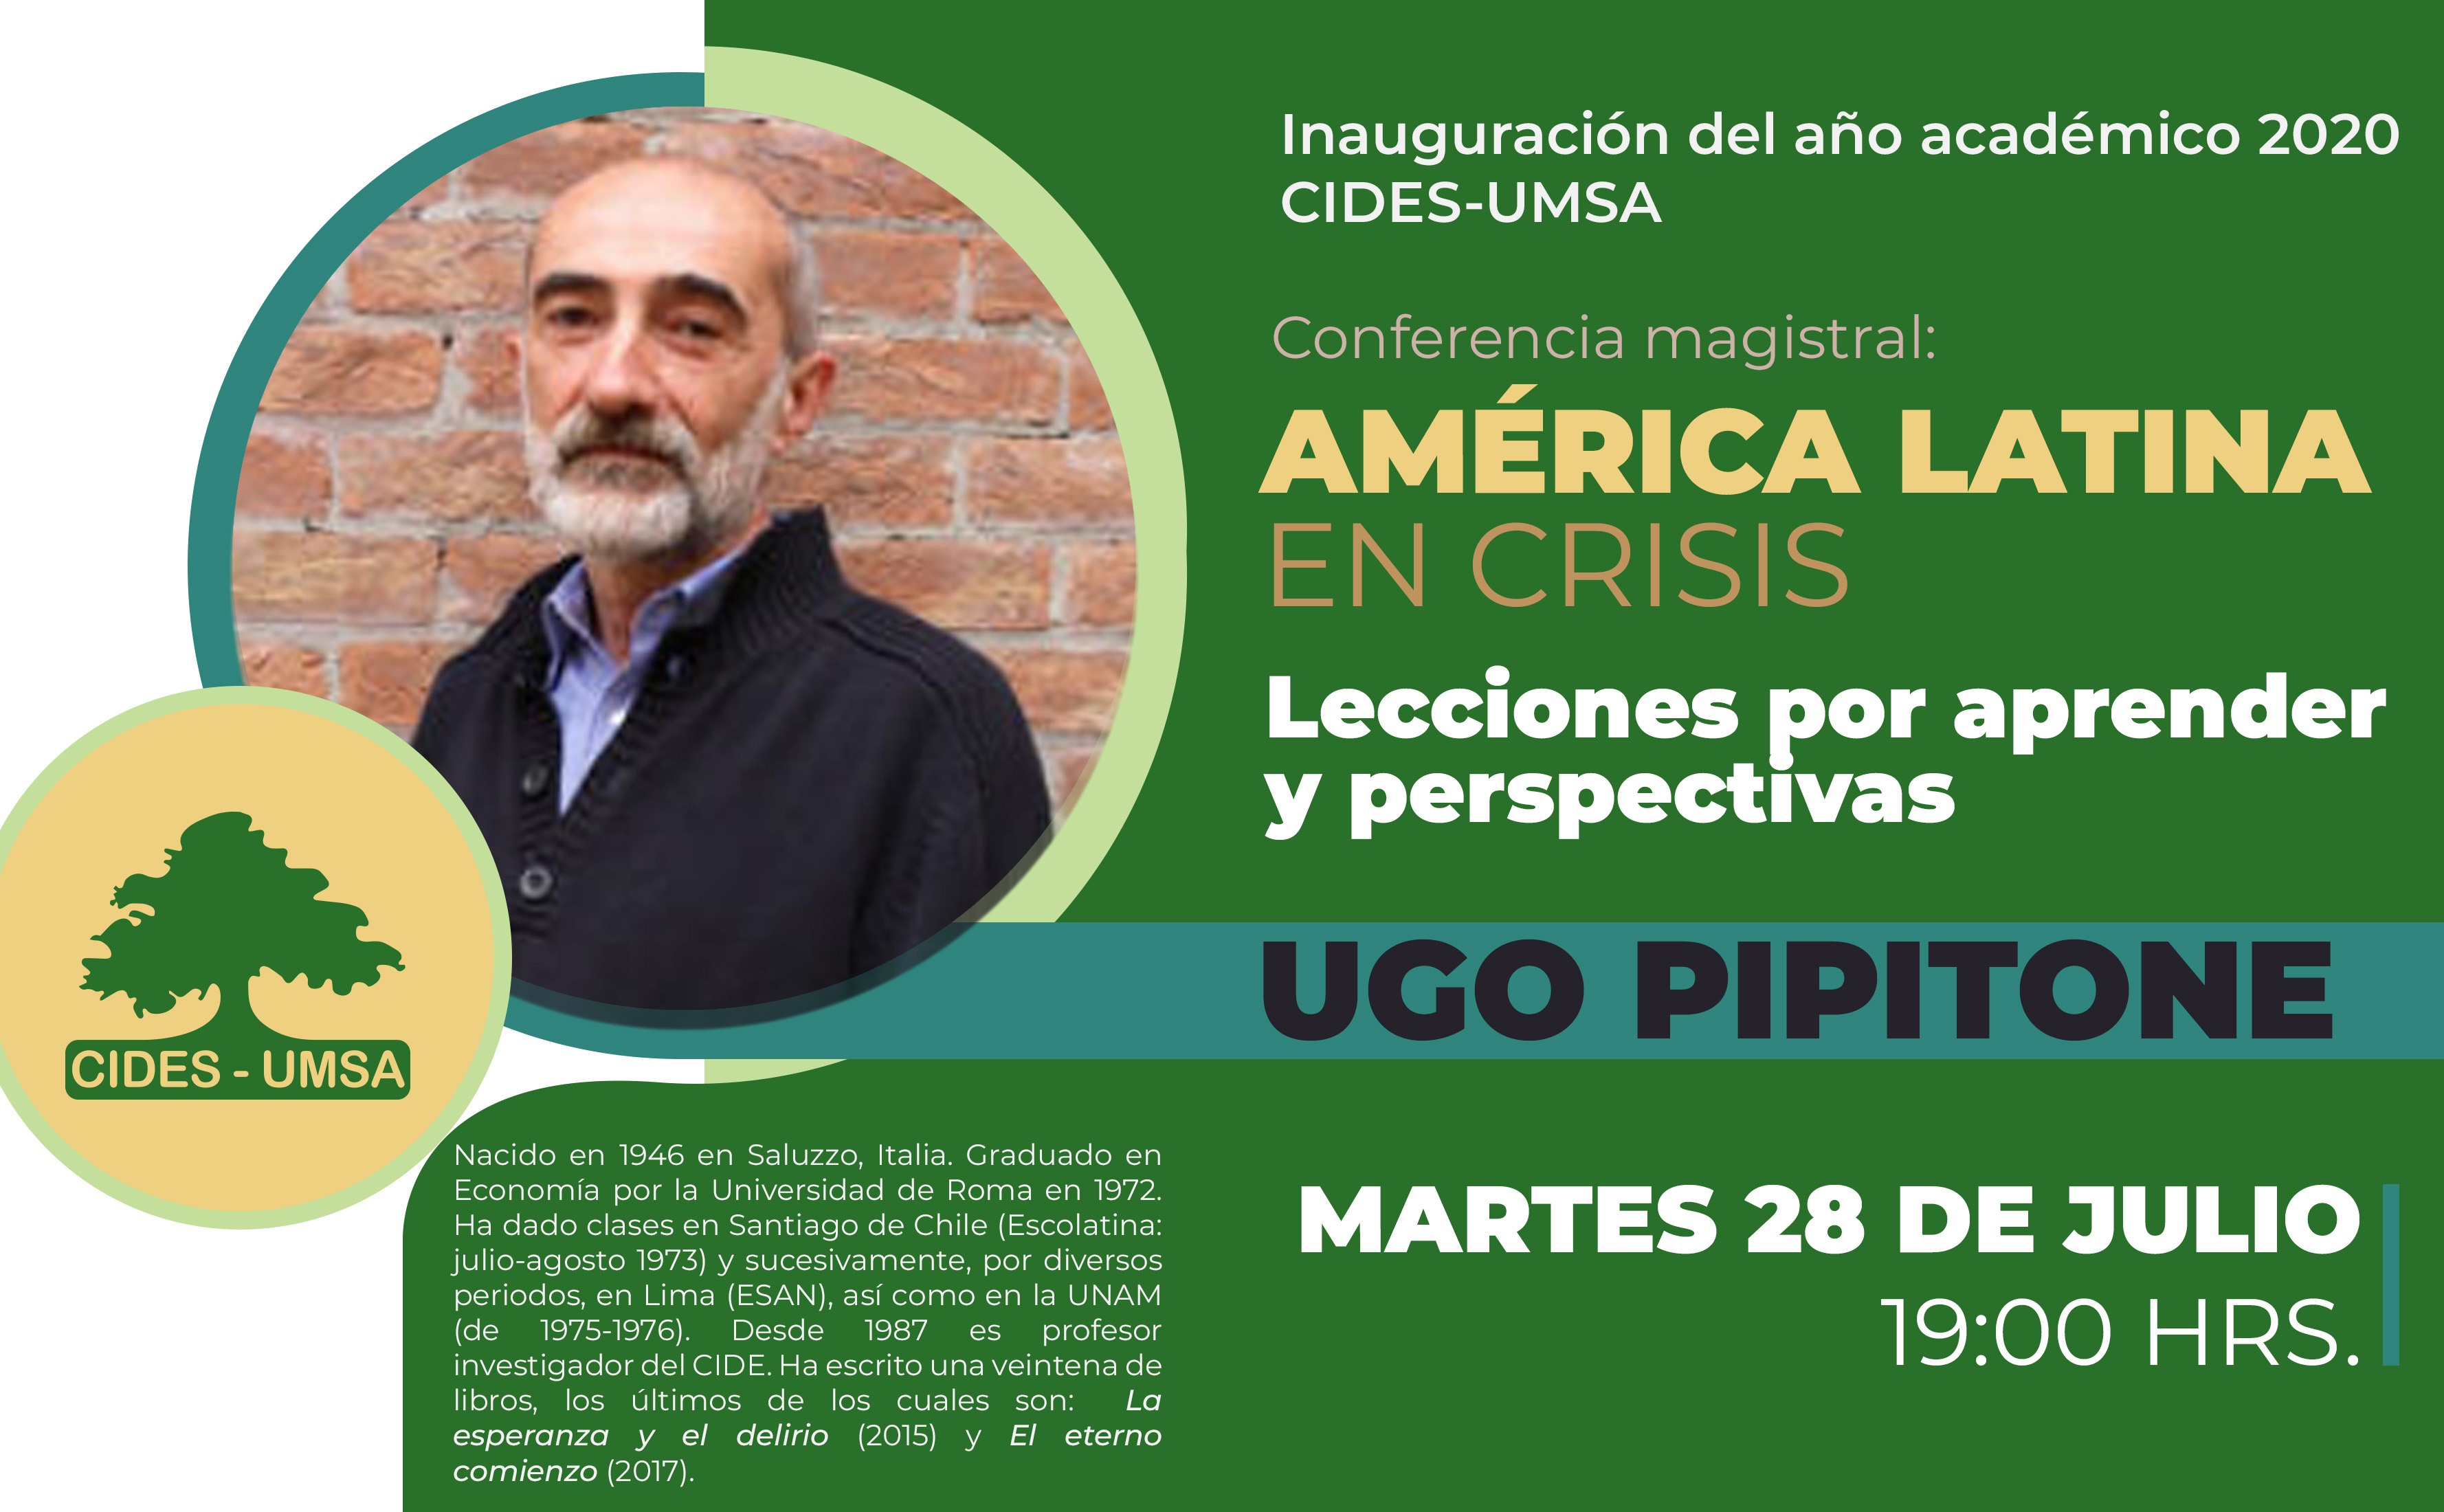 Conferencia magistral: AMÉRICA LATINA EN CRISIS - UGO PIPITONE